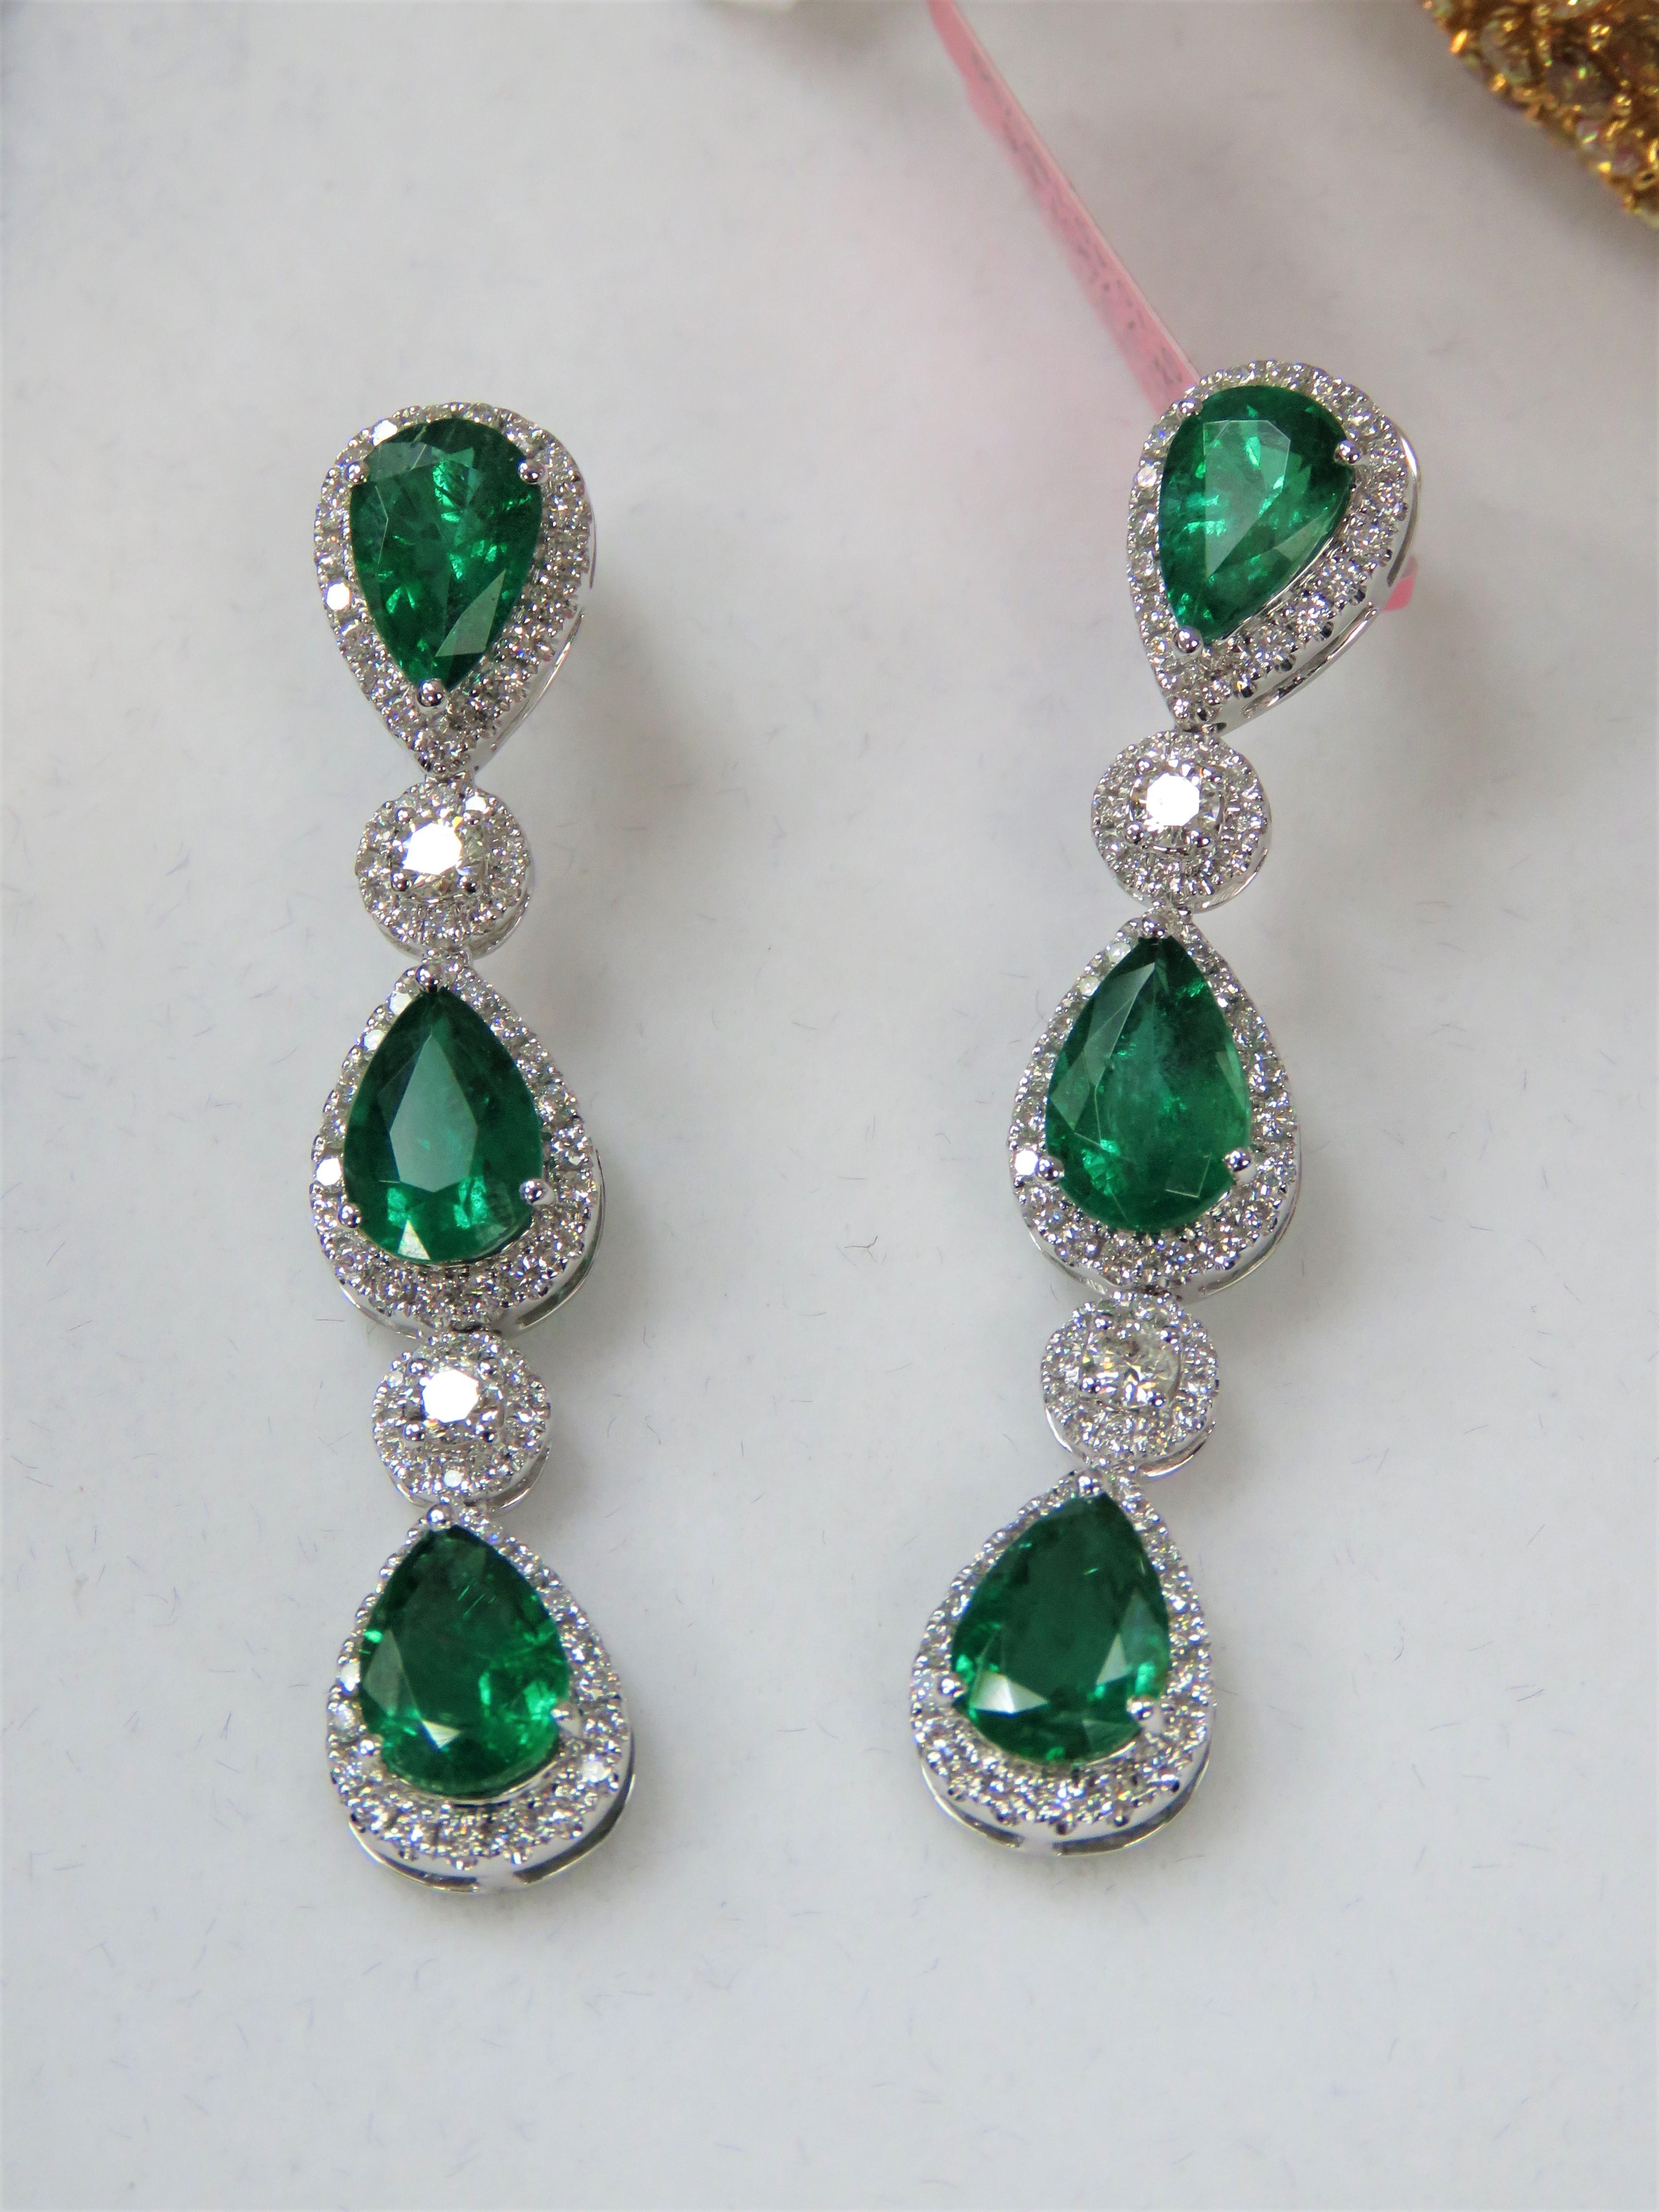 Die folgenden Artikel, die wir anbieten, ist ein Paar von seltenen 18KT Gold Large Emerald Diamond Dangle. Die Ohrringe bestehen aus fein gesetzten, wunderschönen, großen, grünen Smaragd-Diamant-Baumel-Ohrringen!!! T.C.W. Ca. 9.50CTS!! Diese